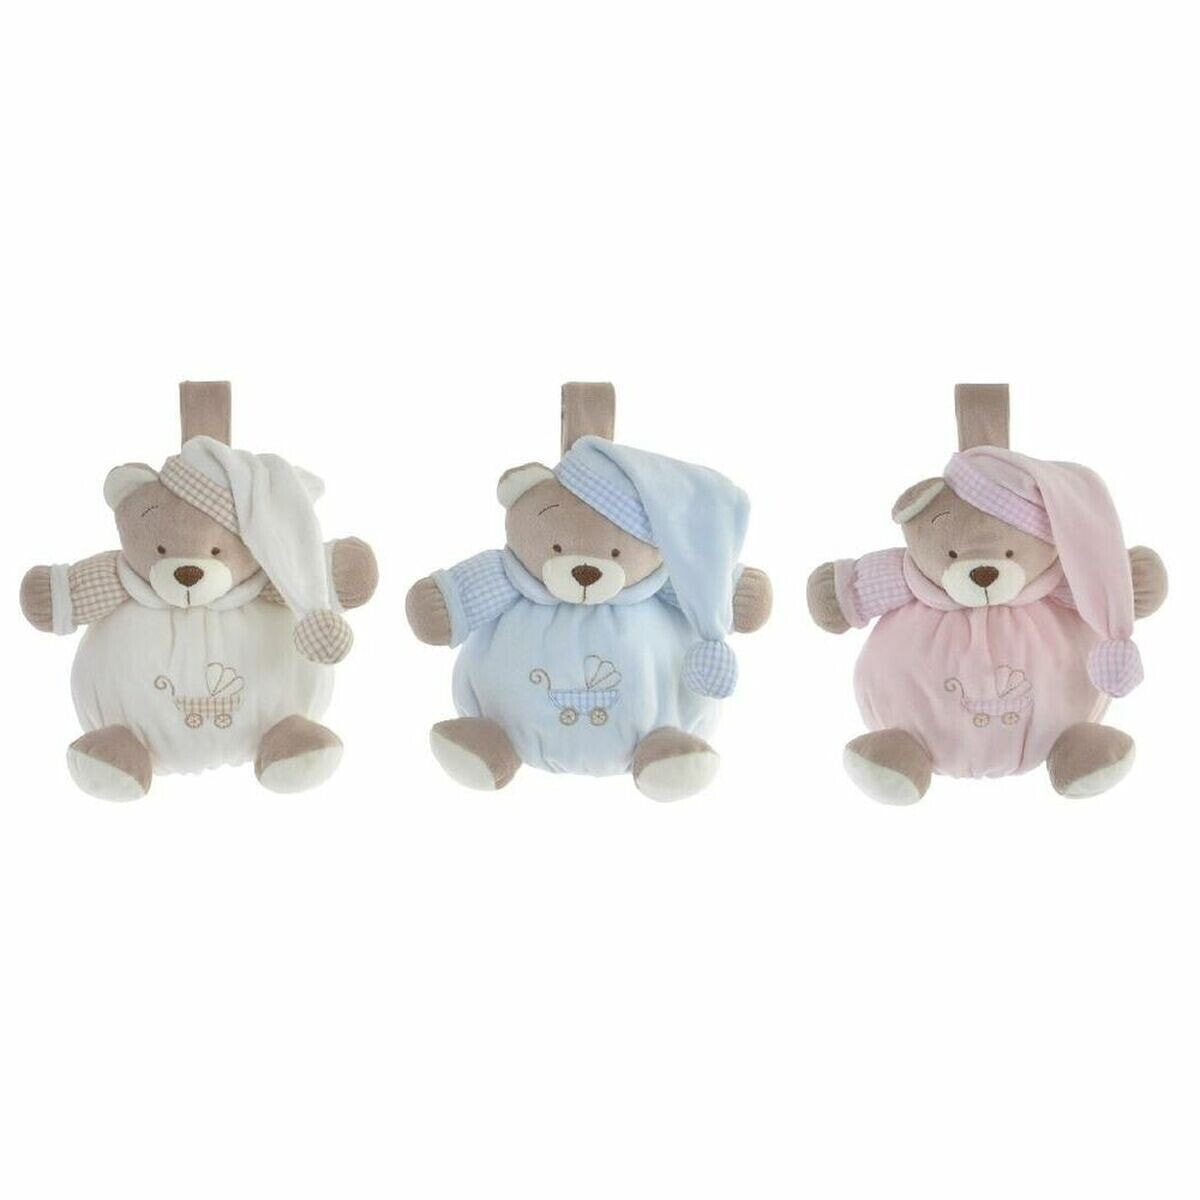 Teddy Bear DKD Home Decor Beige Sky blue Light Pink Musical Children's Bear 13 x 12 x 20 cm (3 Pieces)